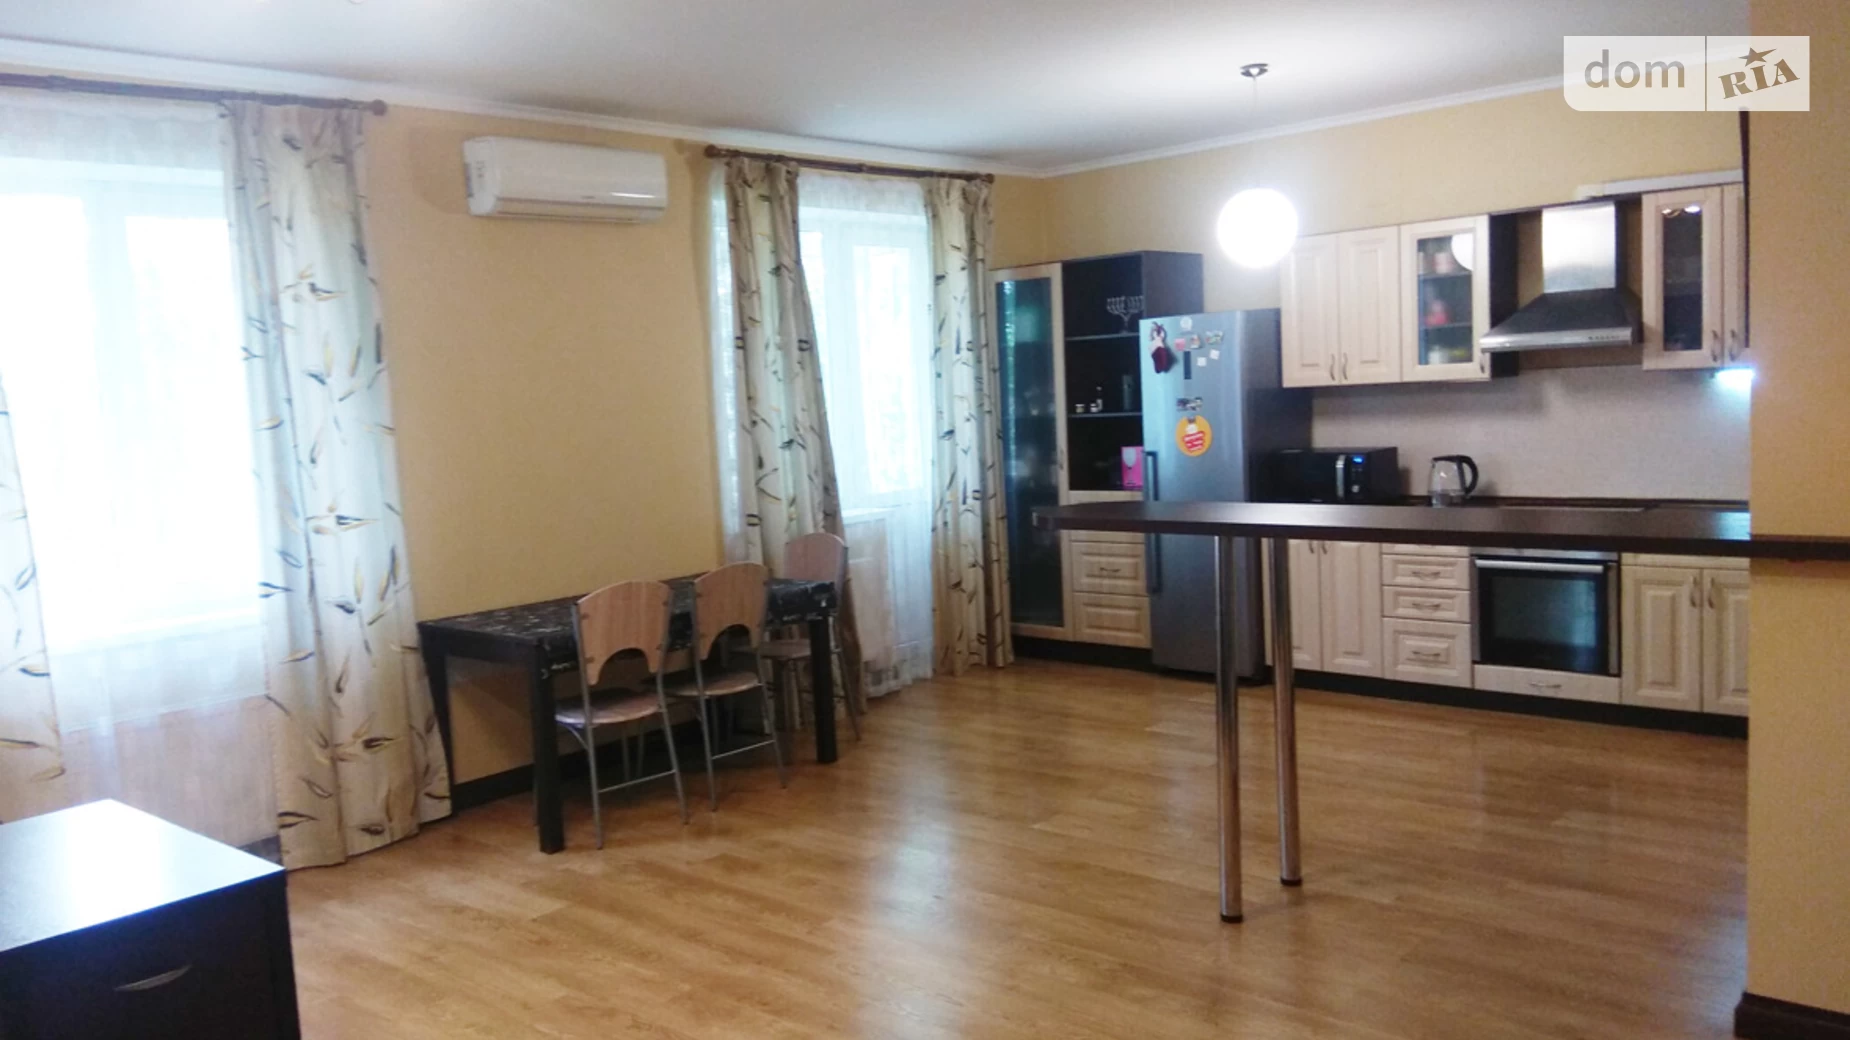 Продається 2-кімнатна квартира 85.6 кв. м у Чубинське, ул. Яблунева, 4